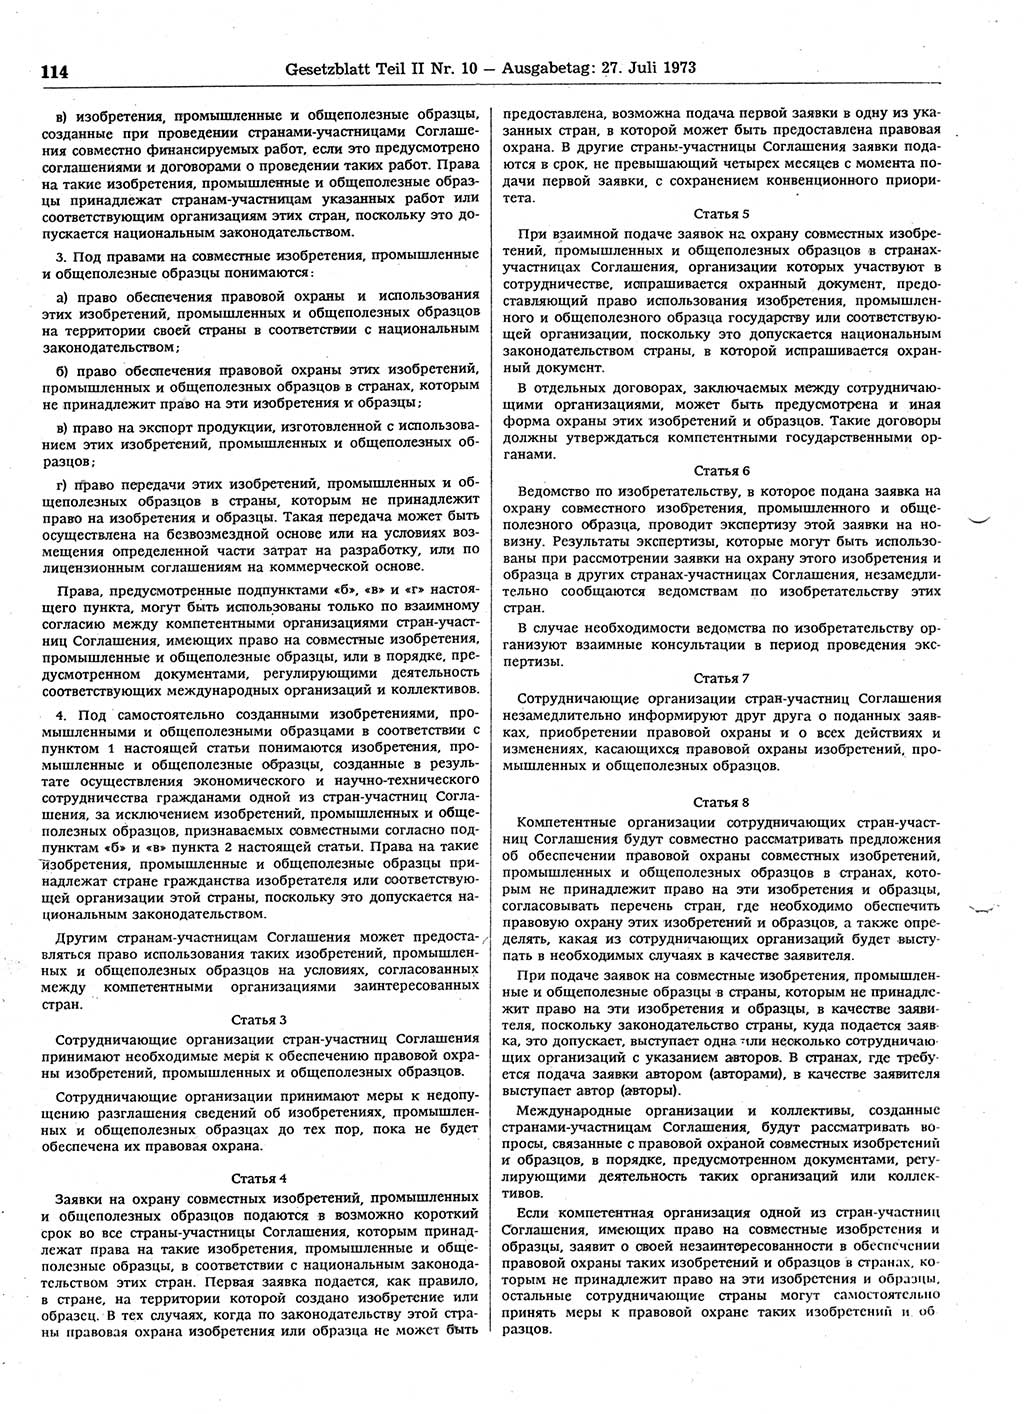 Gesetzblatt (GBl.) der Deutschen Demokratischen Republik (DDR) Teil ⅠⅠ 1973, Seite 114 (GBl. DDR ⅠⅠ 1973, S. 114)